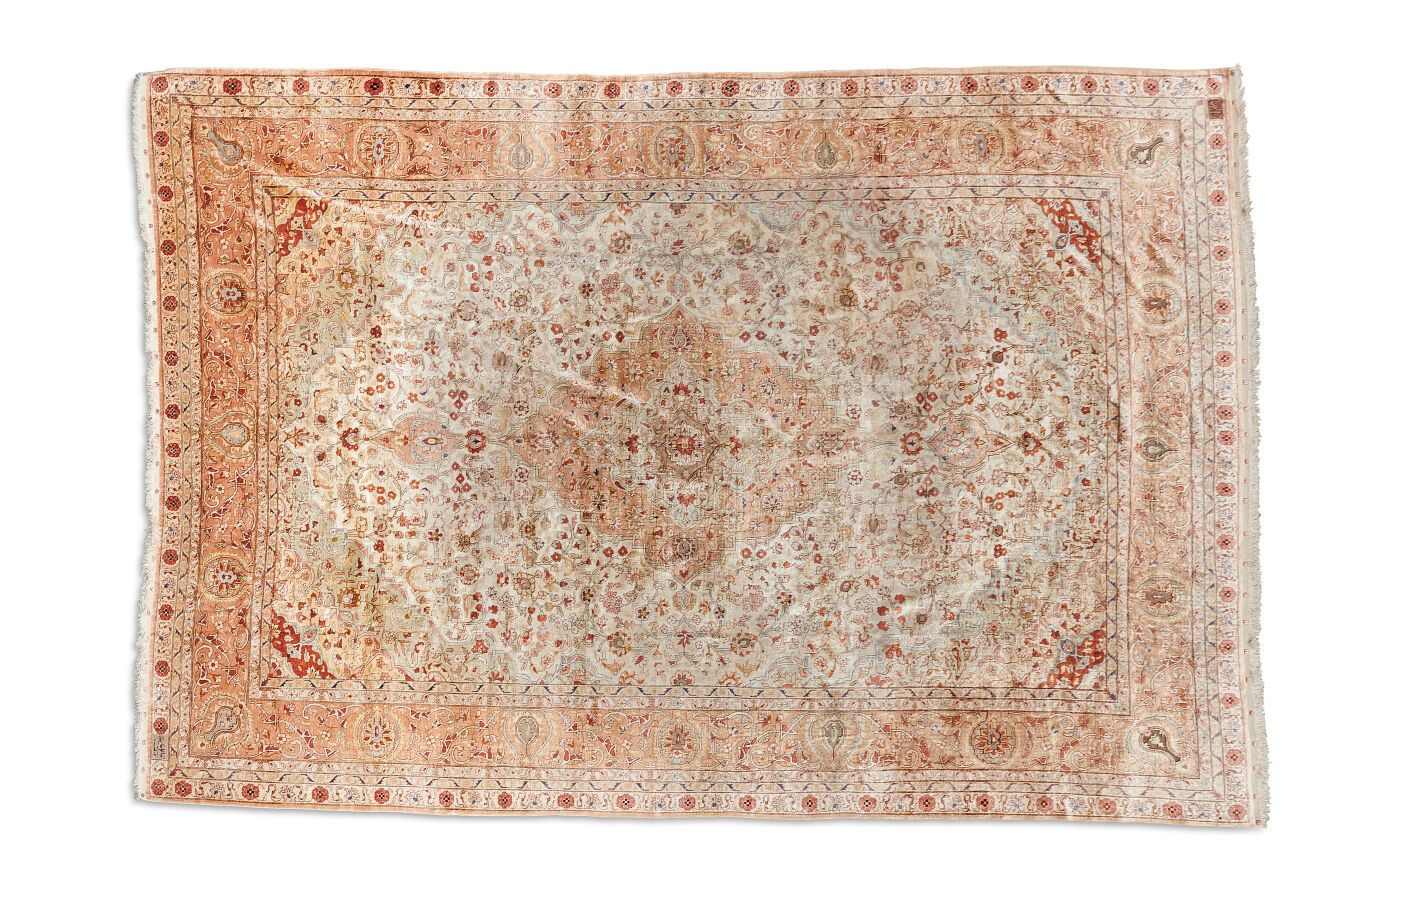 Null Hereké silk carpet with metallic threads
Silk warp, weft and pile
Western T&hellip;